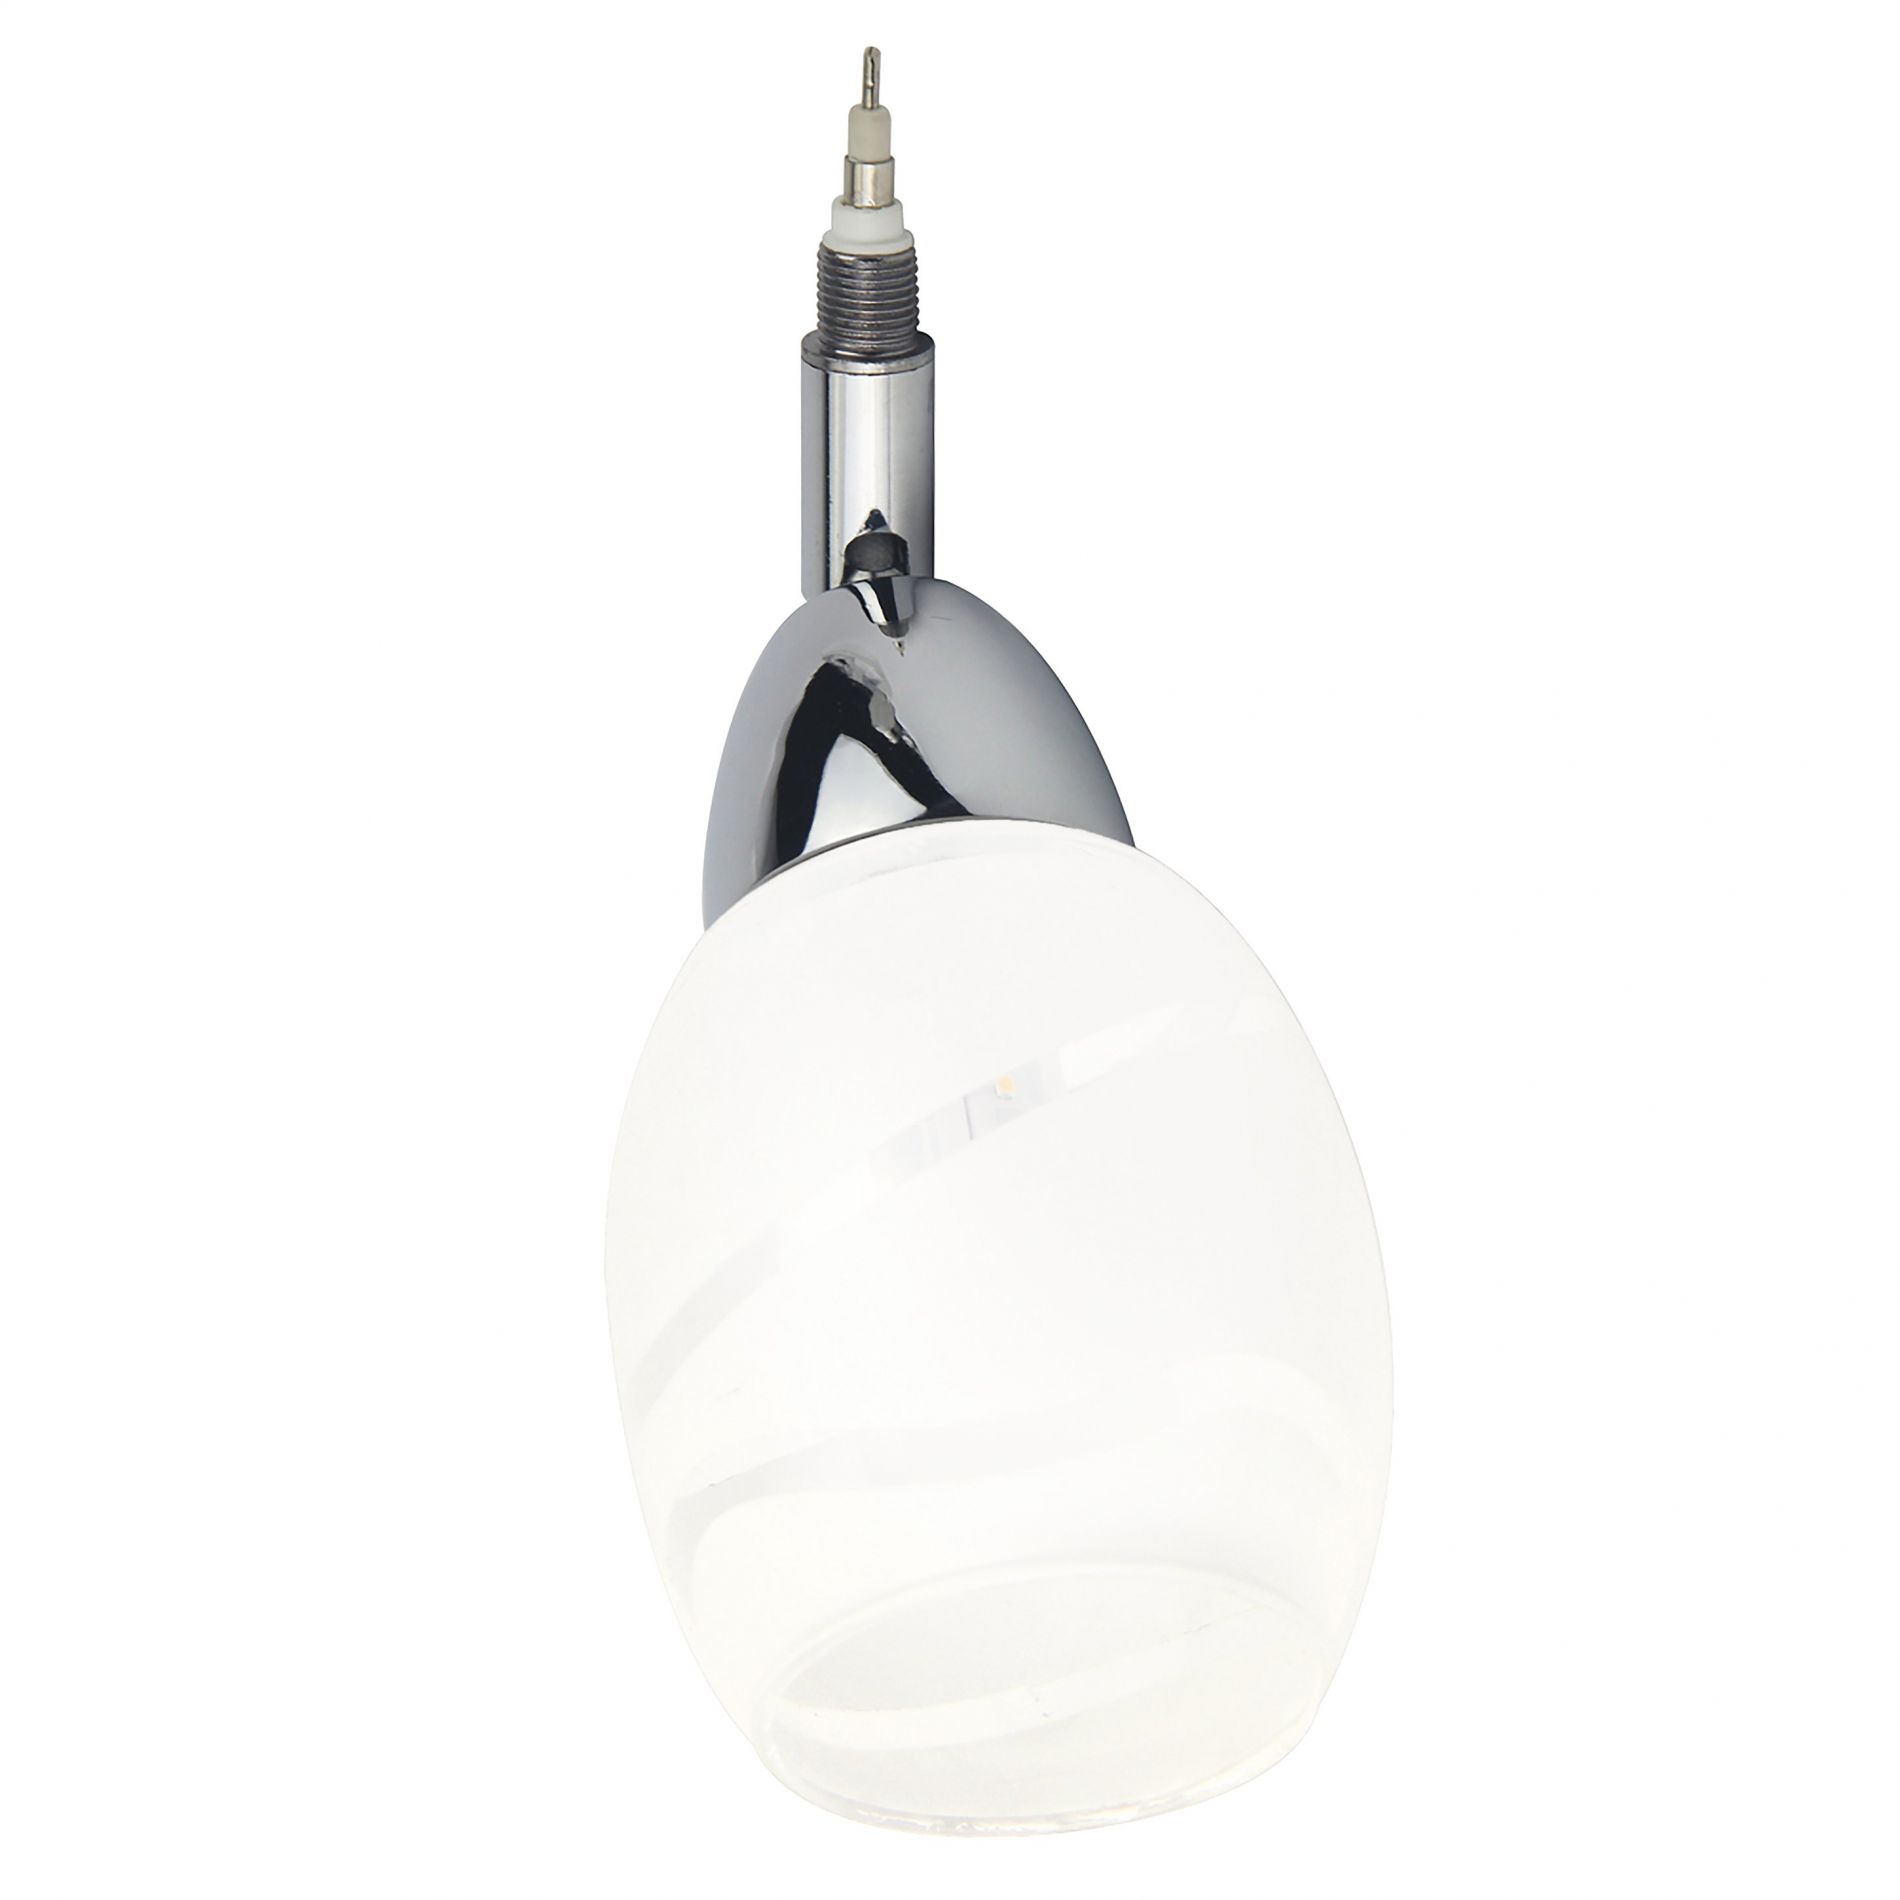 Diffuseur orientable LED globe REMIXLED argenté/blanc en métal/verre